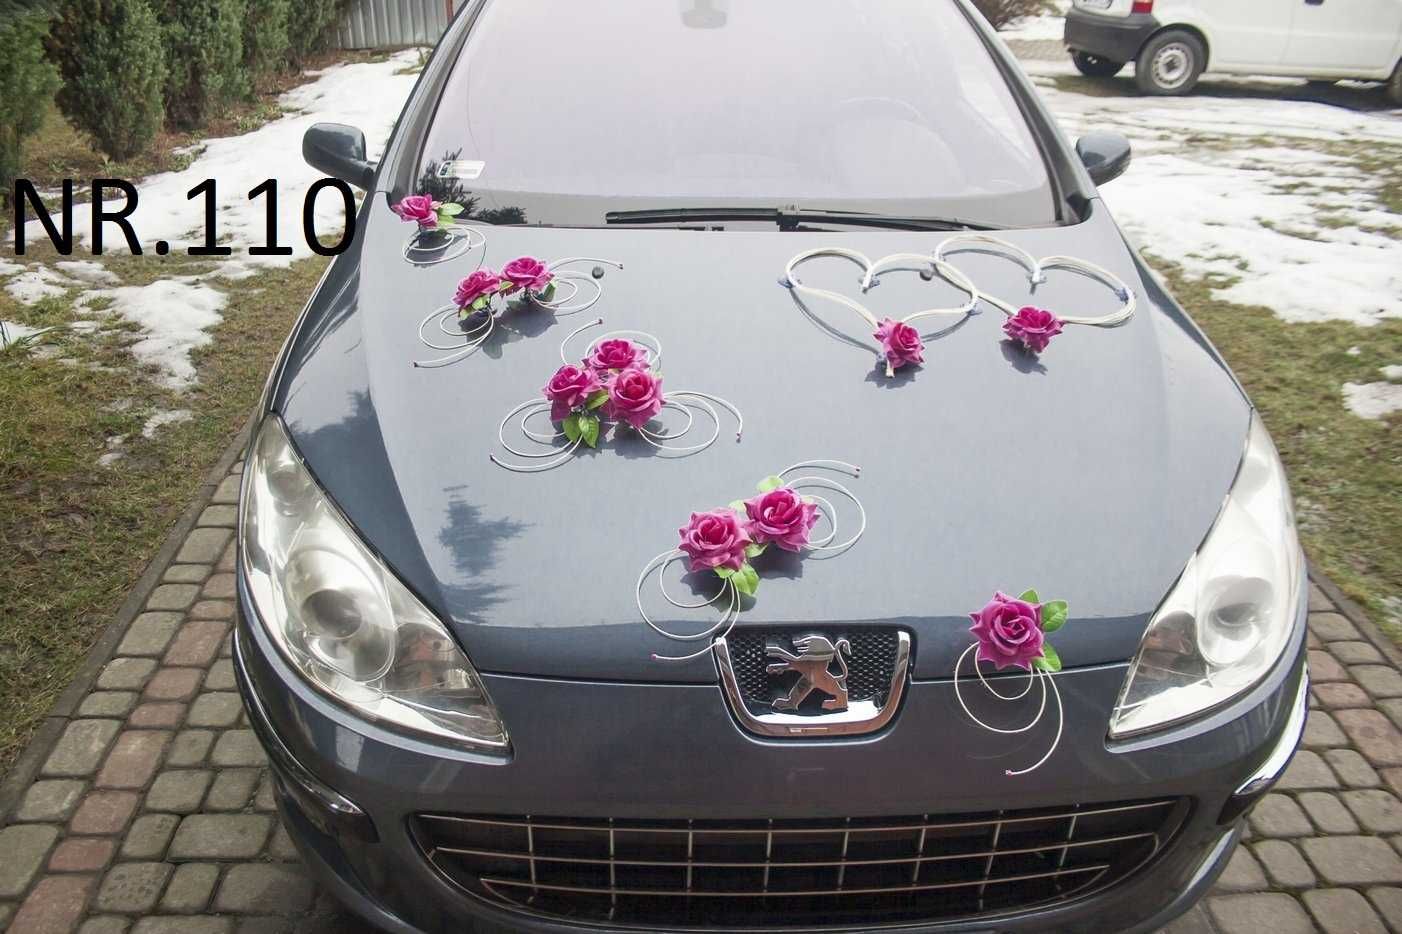 Piękne róże w kolorze FUKSJI Dekoracja ozdoba na samochód auto 110